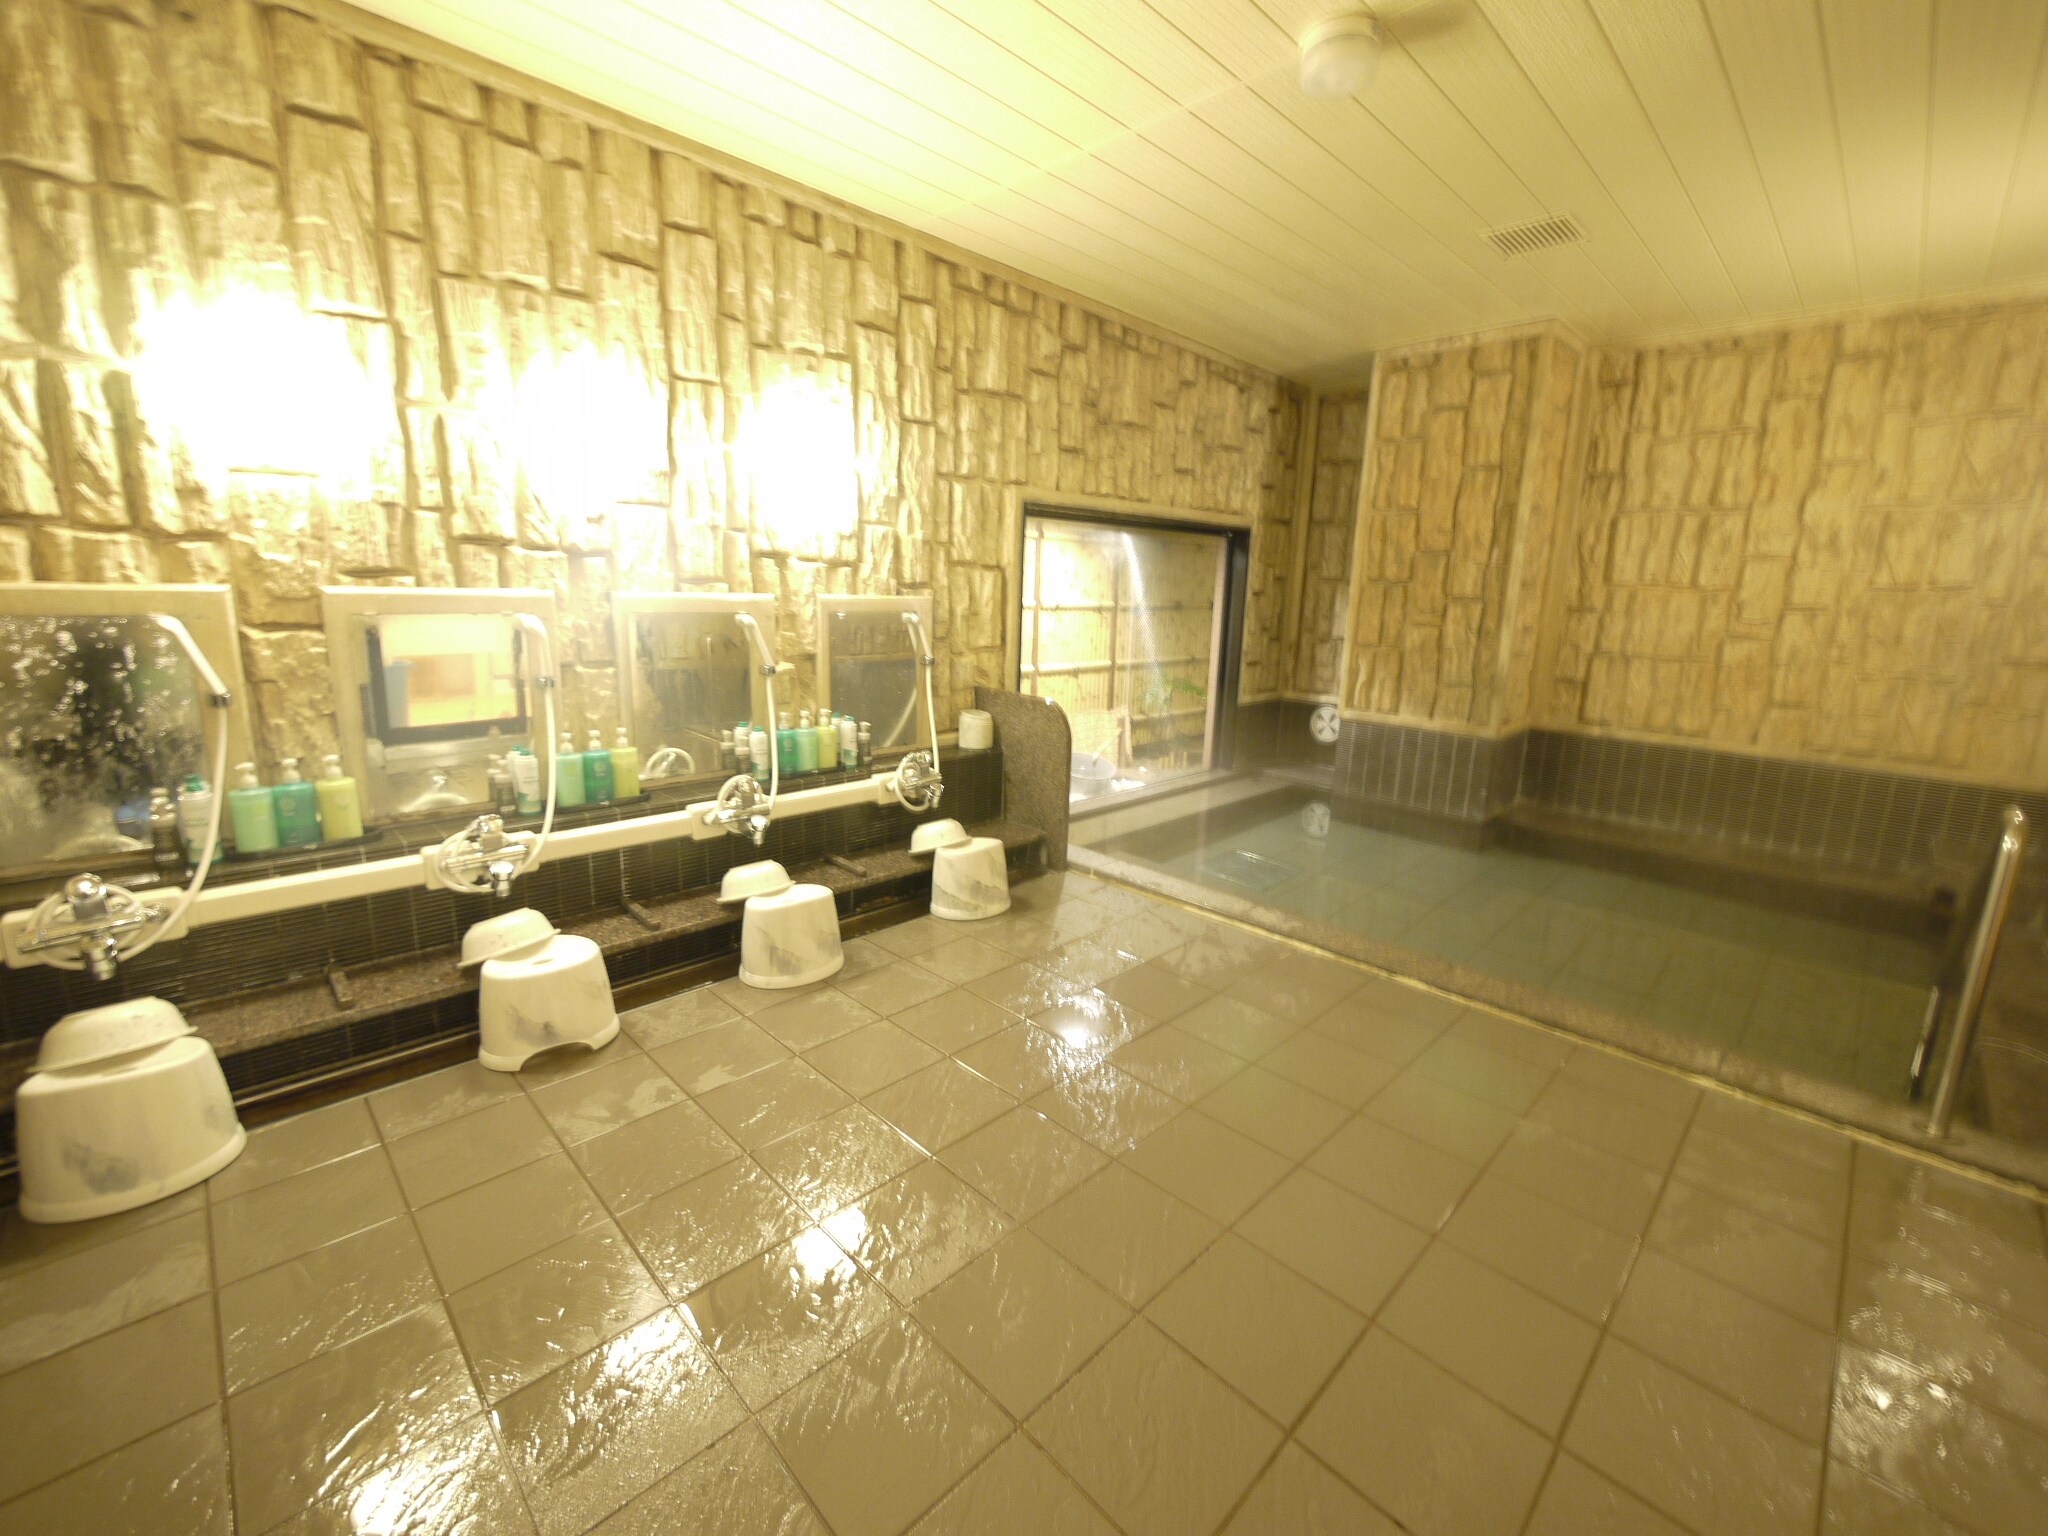 [男士公共浴池] 15:00 至 2:00 和 5:00 至 10:00 提供旅行者熱水。